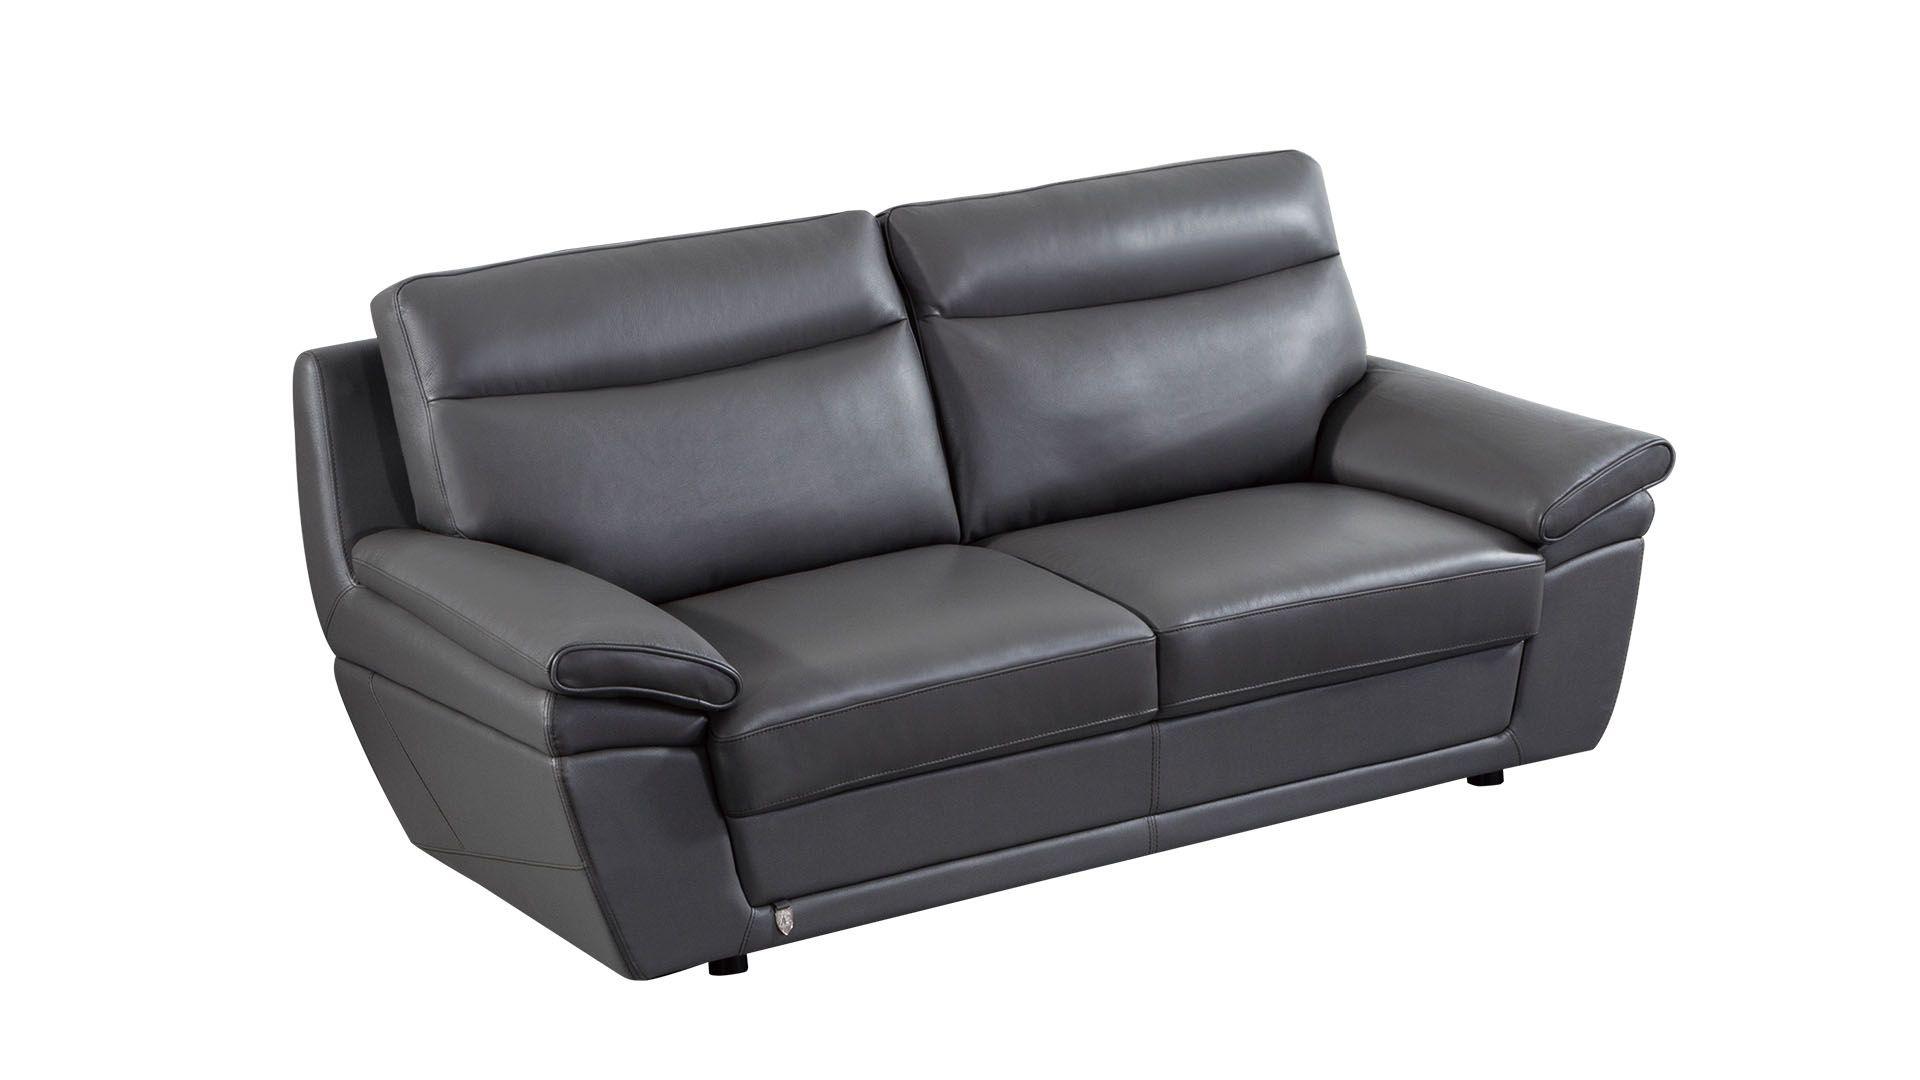 

    
EK092-GR-Set-3 American Eagle Furniture Sofa Set
